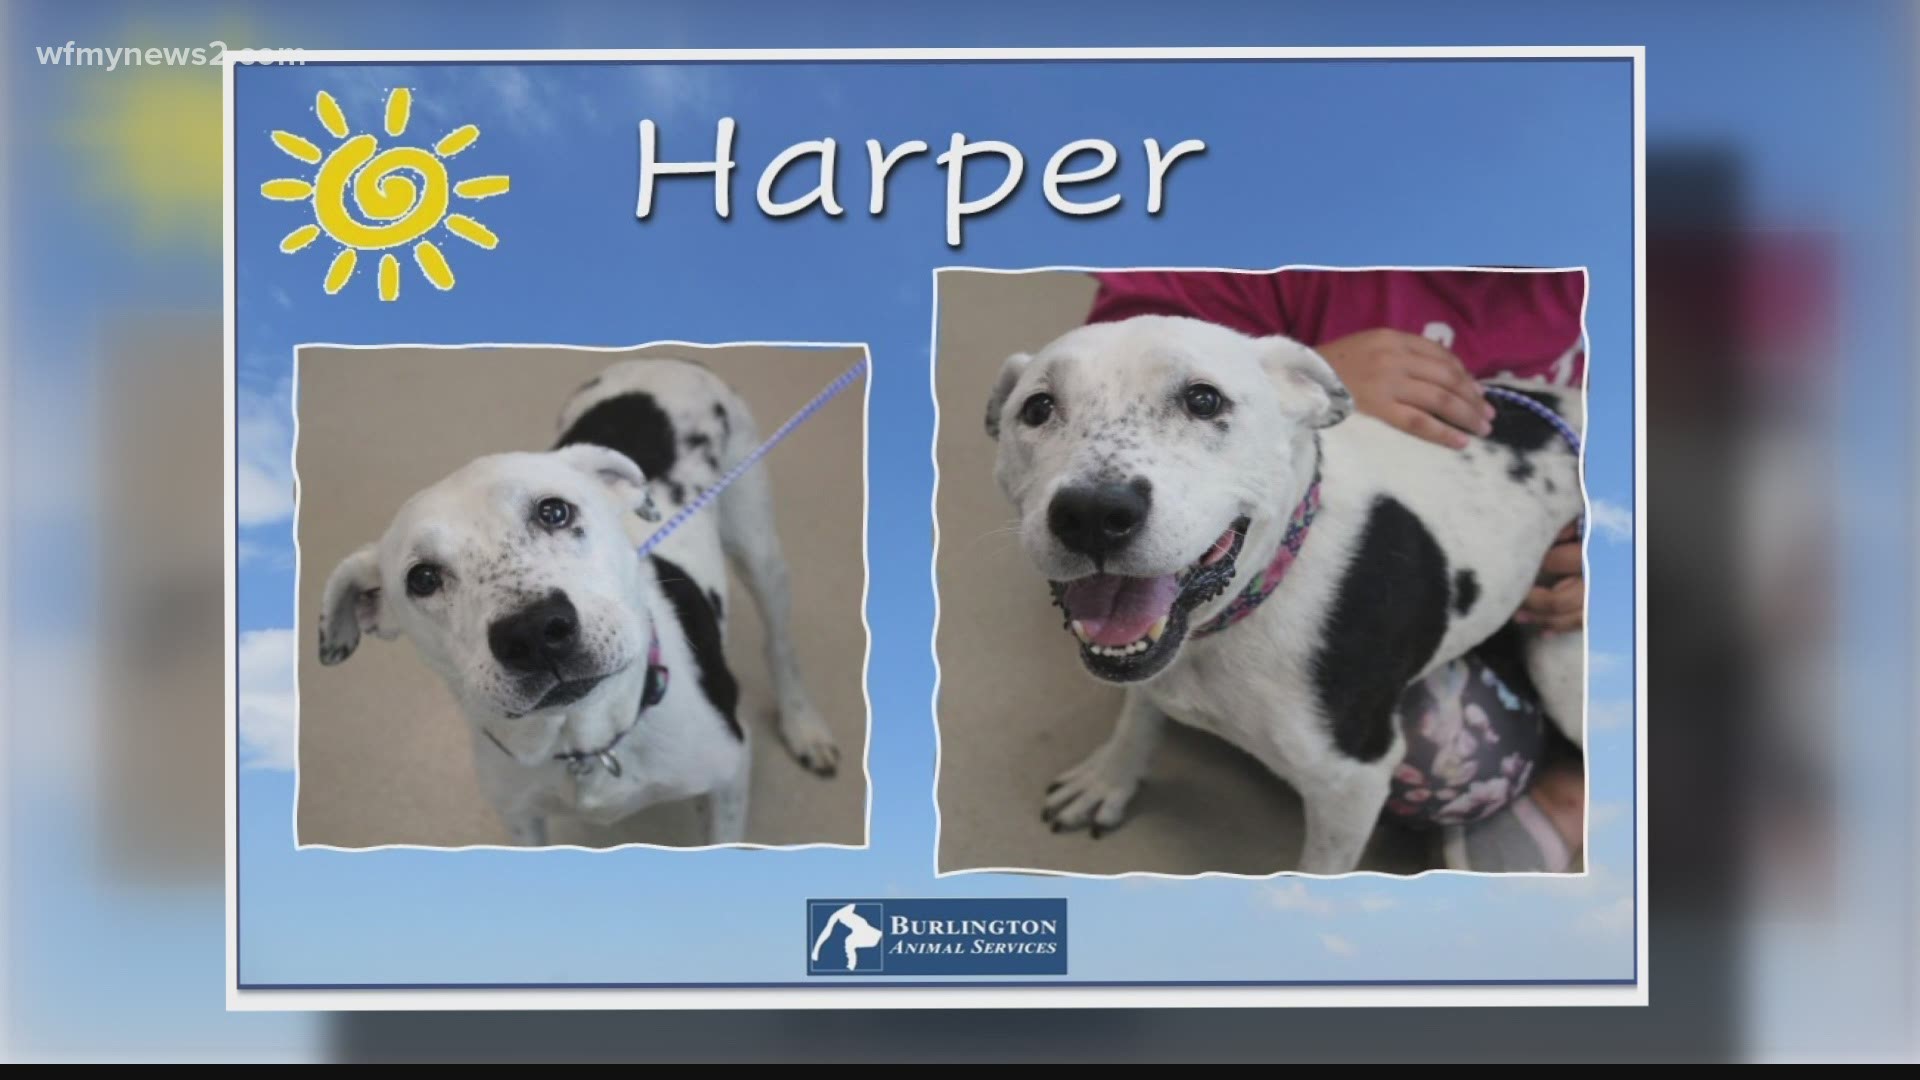 Let’s get Harper adopted!